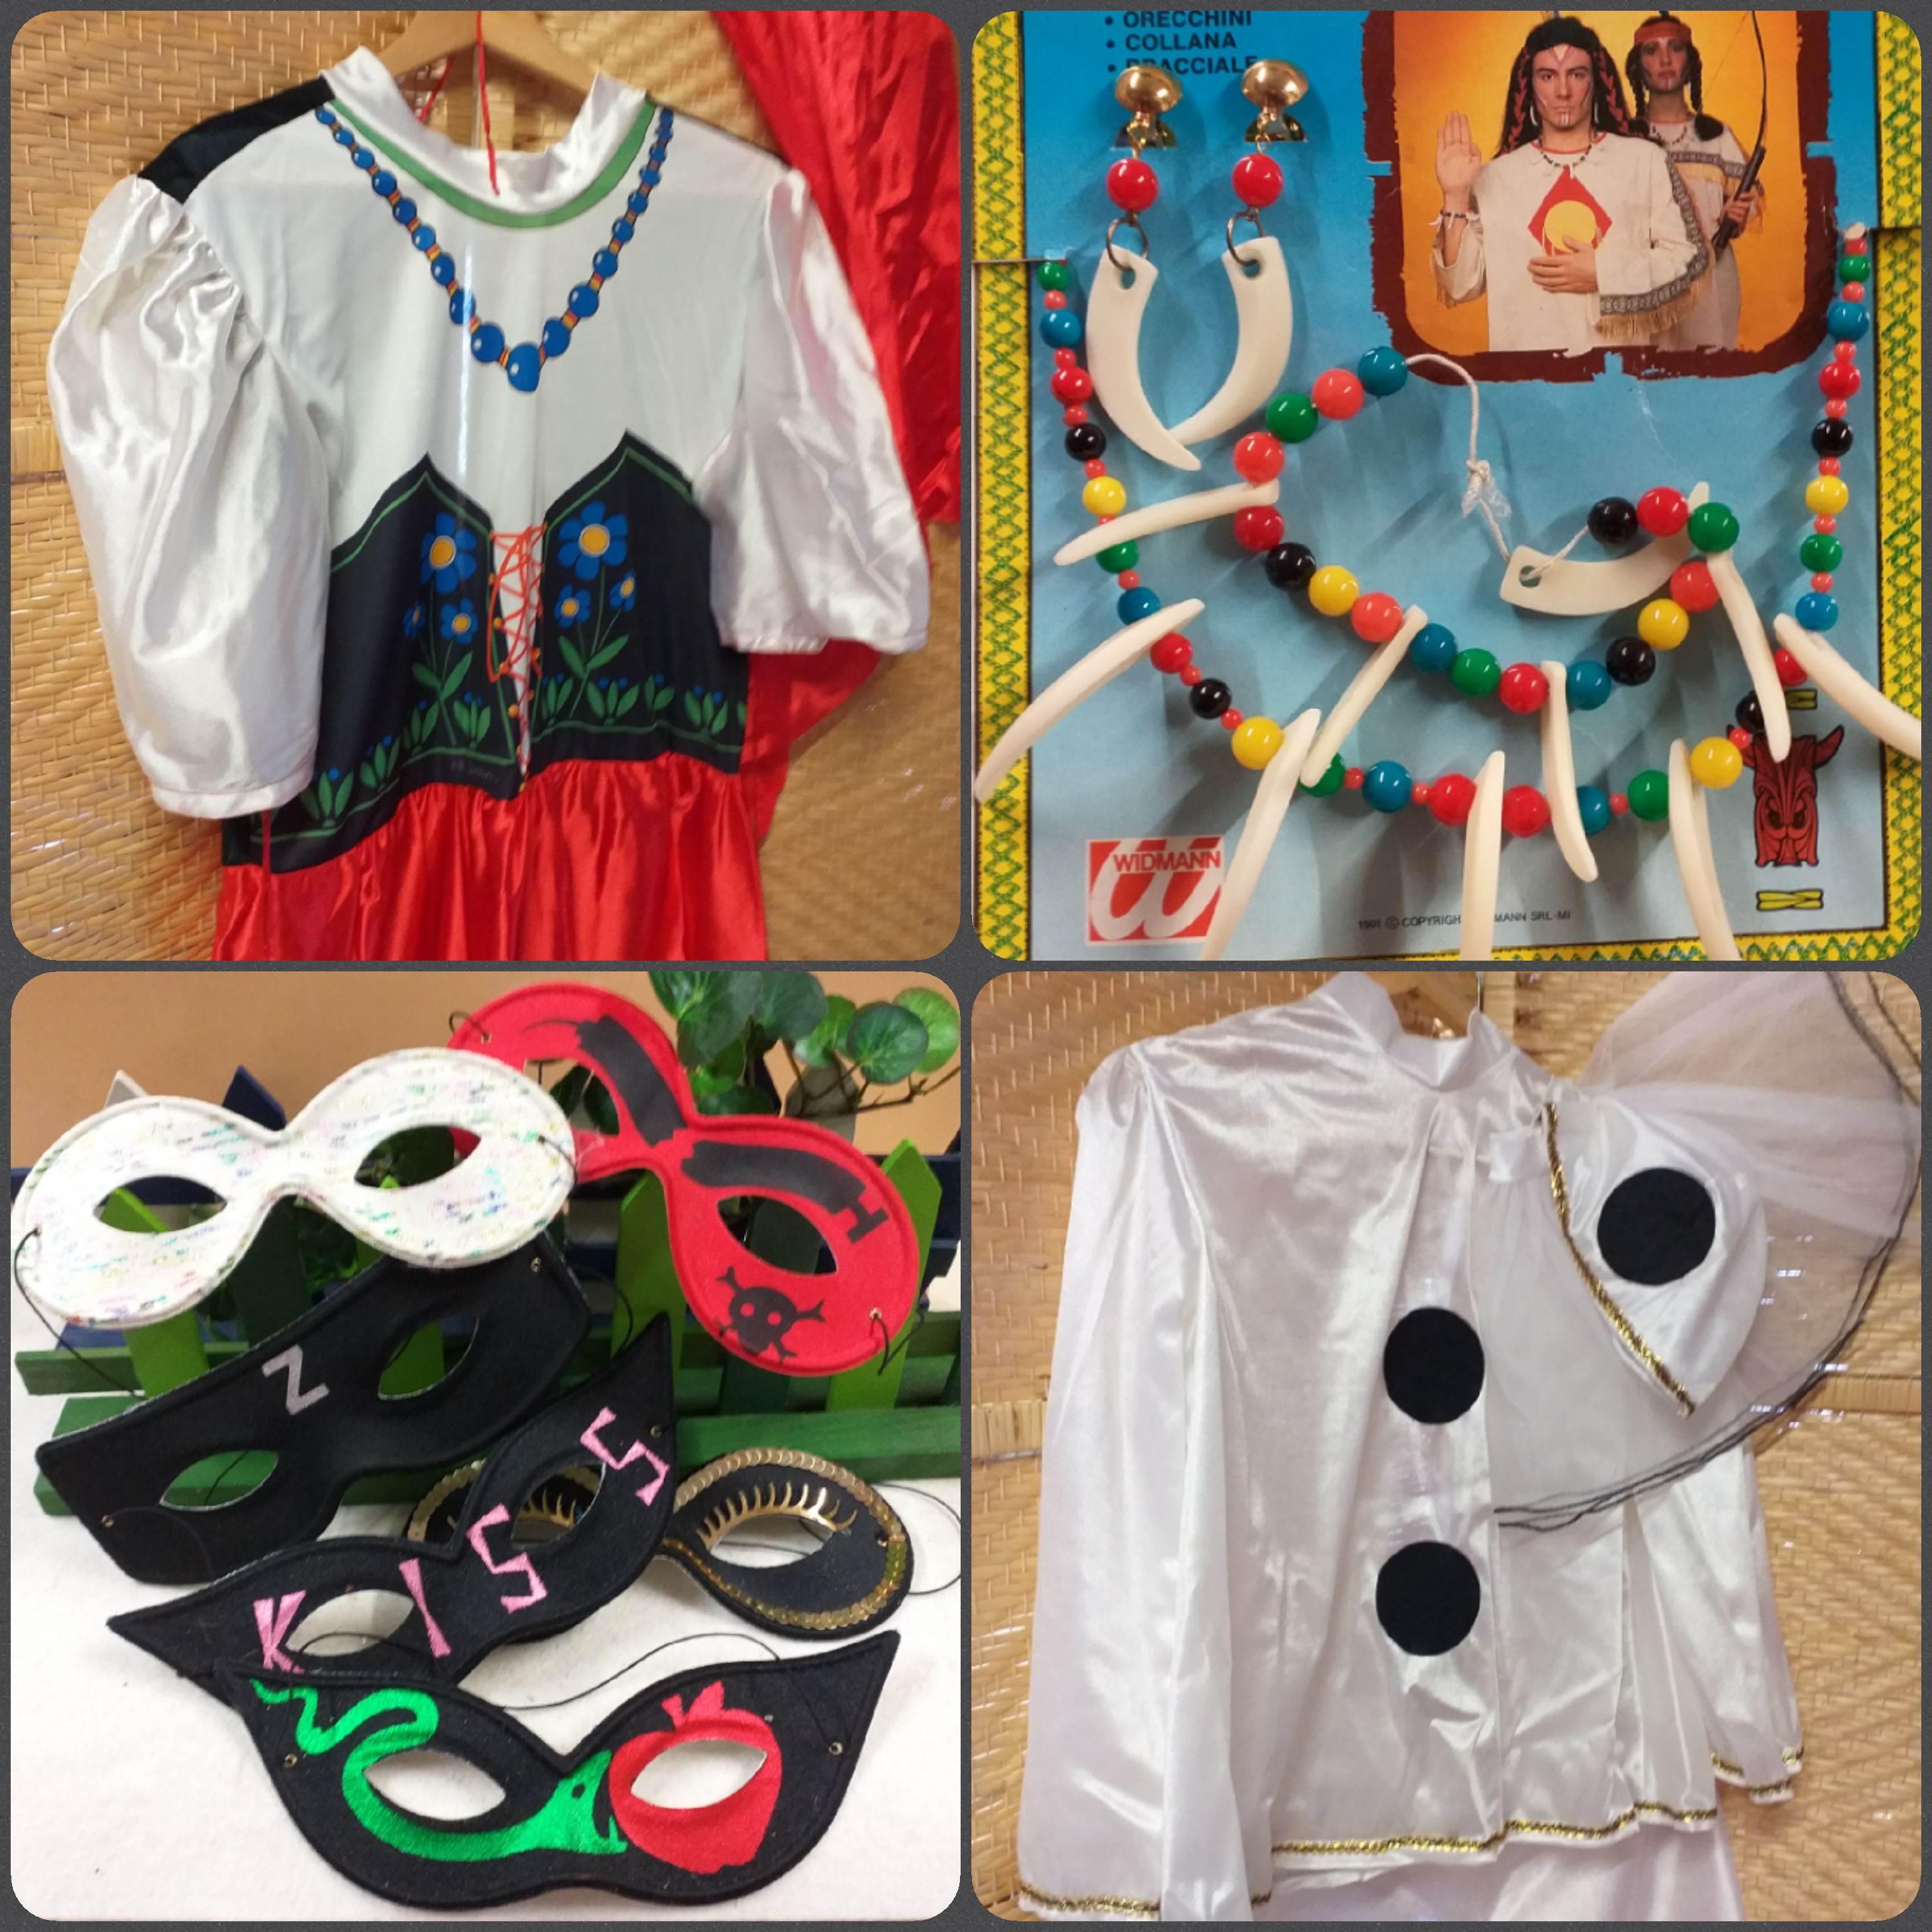 Accessori e costumi Carnevale fai da te maschere vestiti feste a tema –  Tagged cucito-creativo – hobbyshopbomboniere